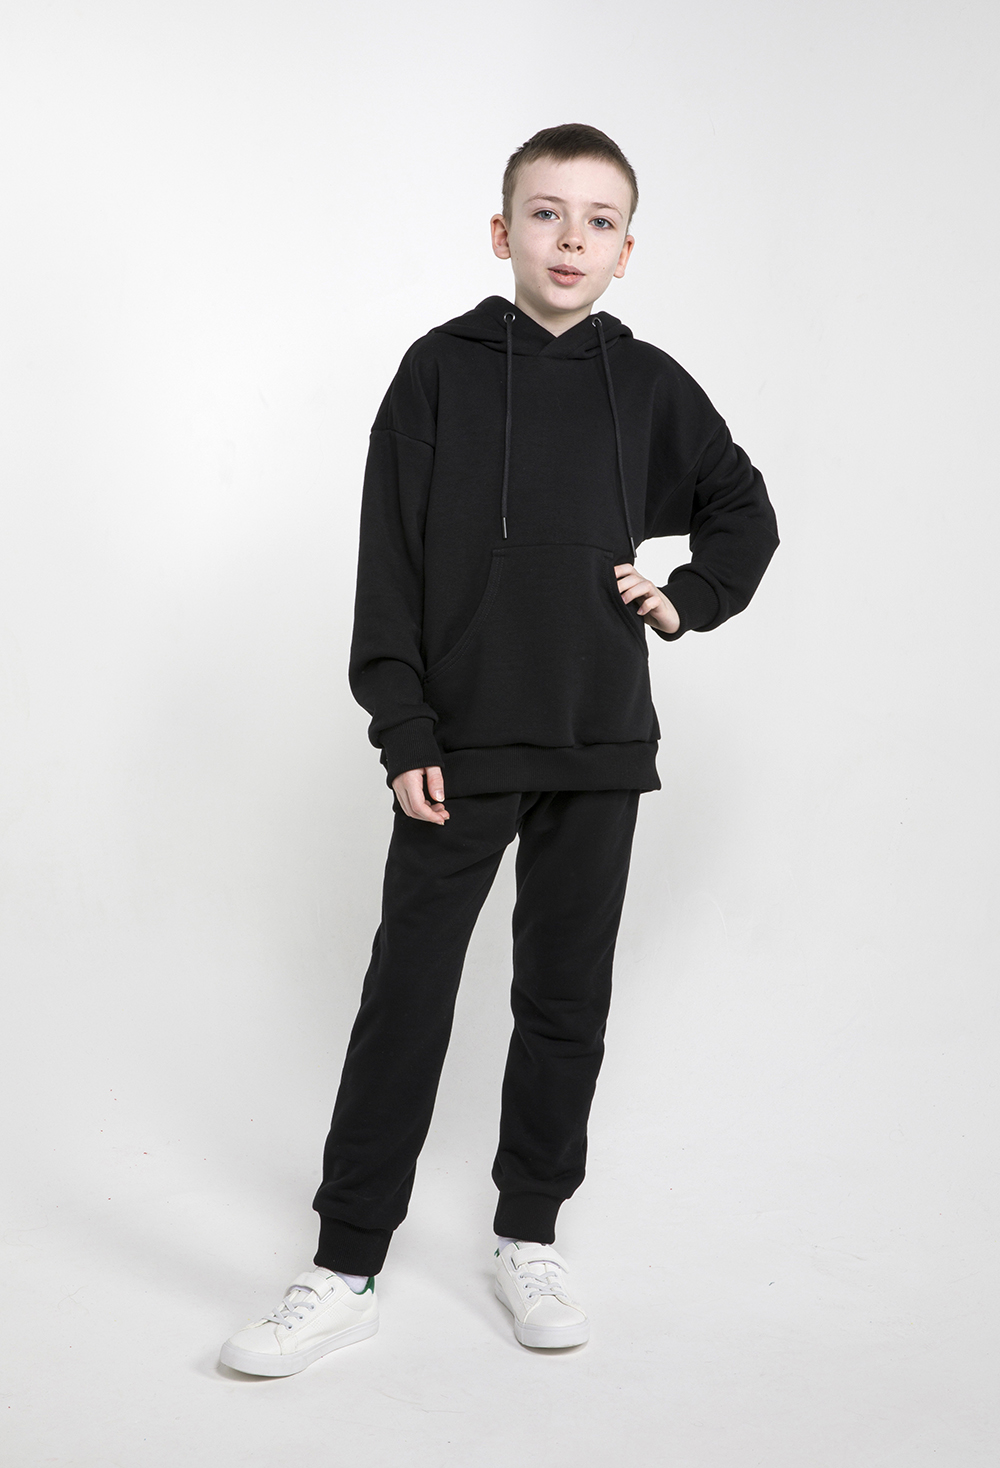 Детский спортивный костюм, МаdbаТ, к0003, р.152, цв. черный